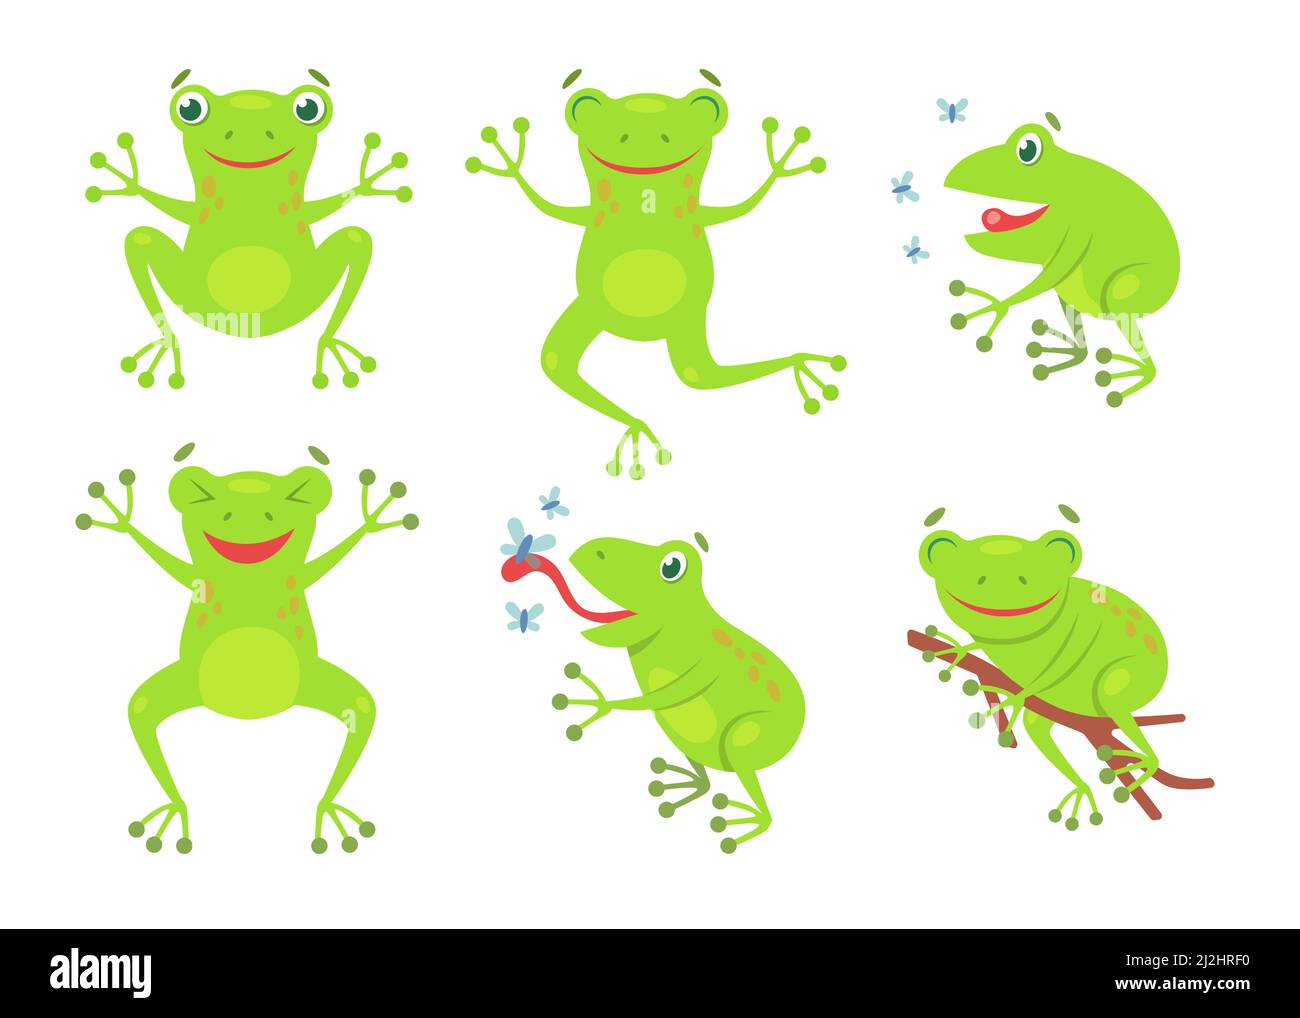 Ensemble d'illustrations de dessin animé de grenouilles mignonnes.Drôle vert croaking crapauds et grenouilles sautant et attrapant des mouches isolées sur fond blanc.Vecteur plat colec Illustration de Vecteur